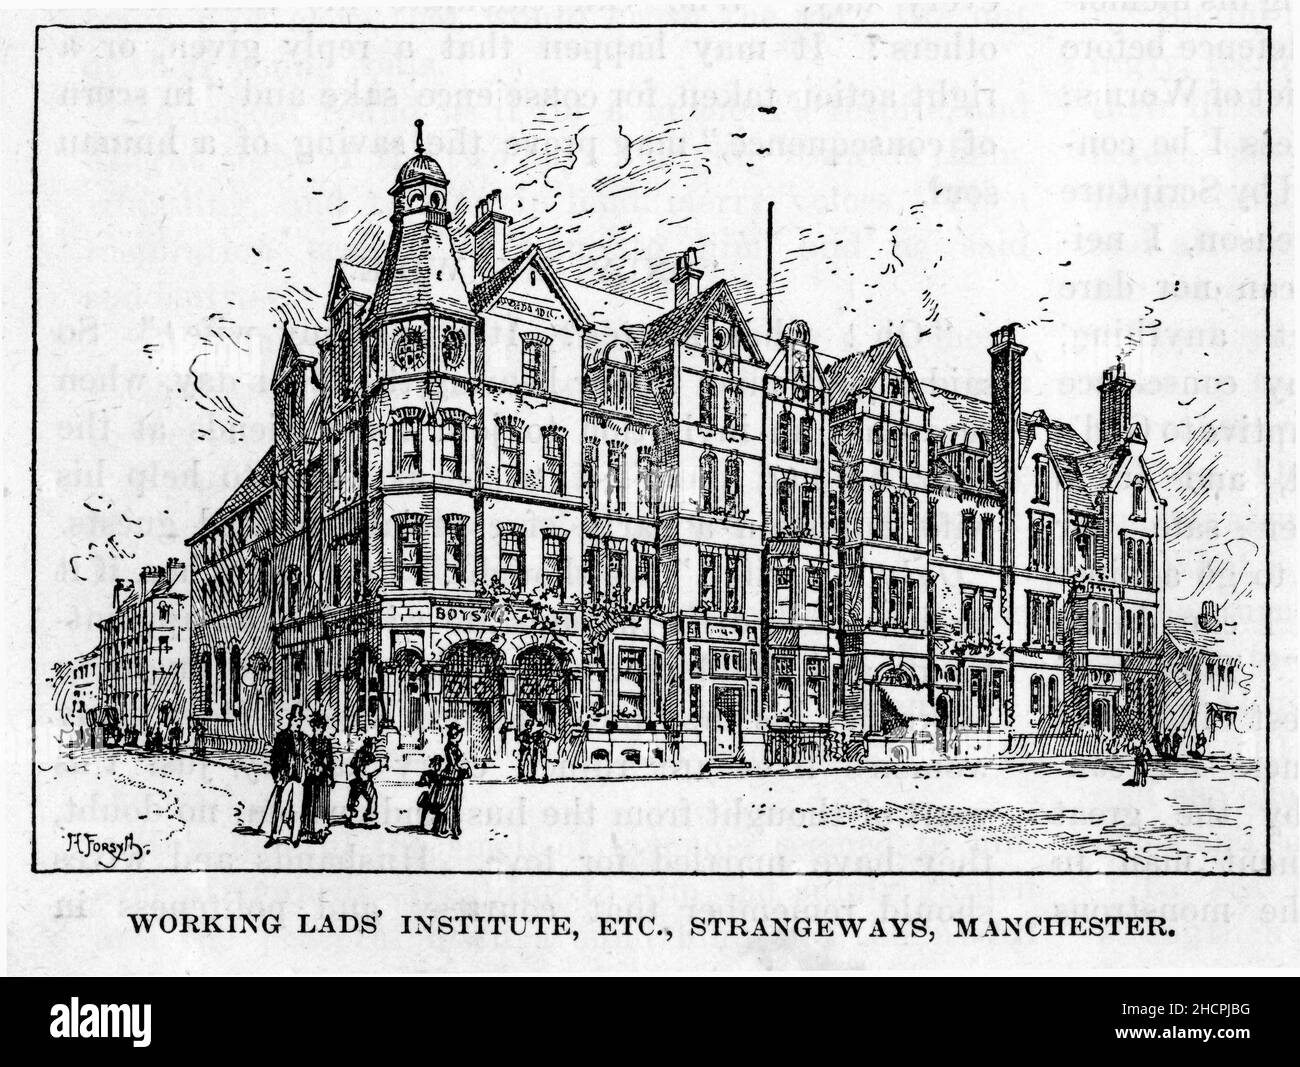 Gravure de l'Institut des lades de travail, Strangways, Manchester, Angleterre, publiée en 1892 Banque D'Images